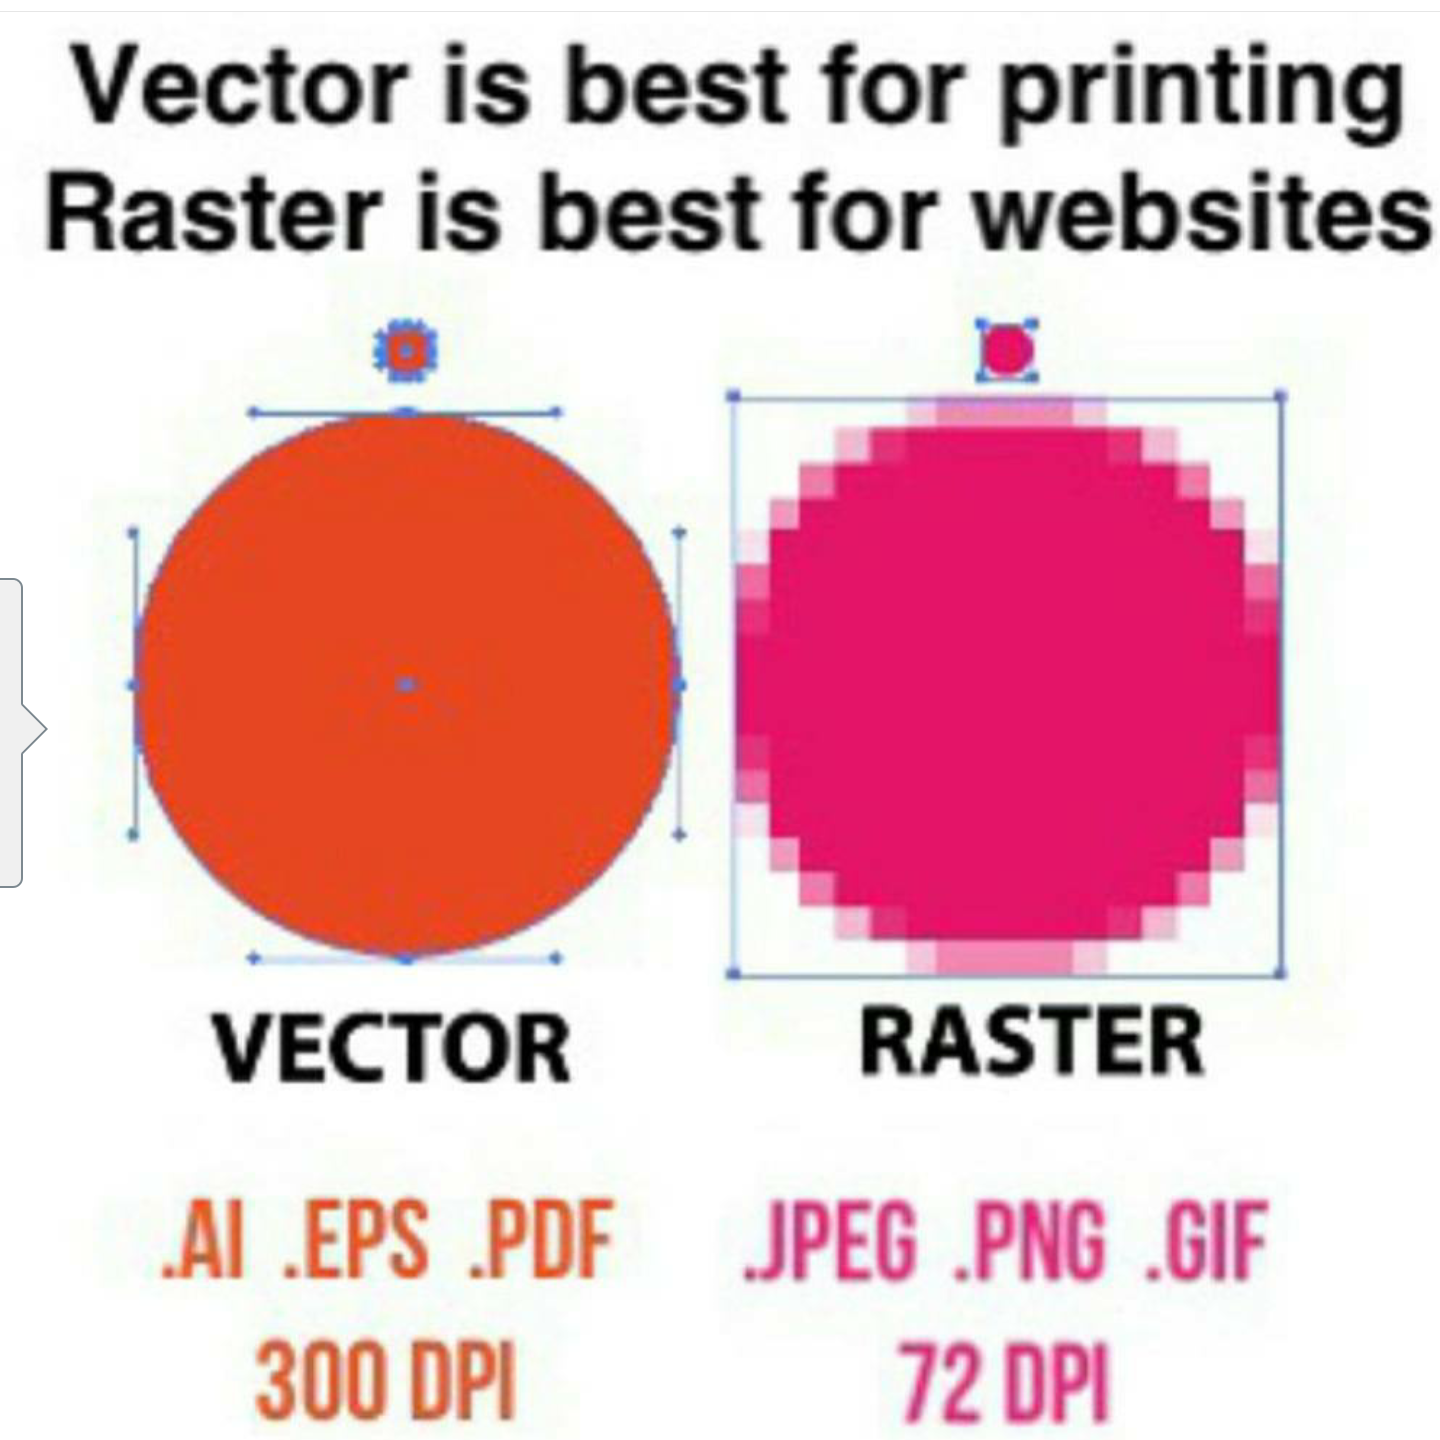 raster image vs vector